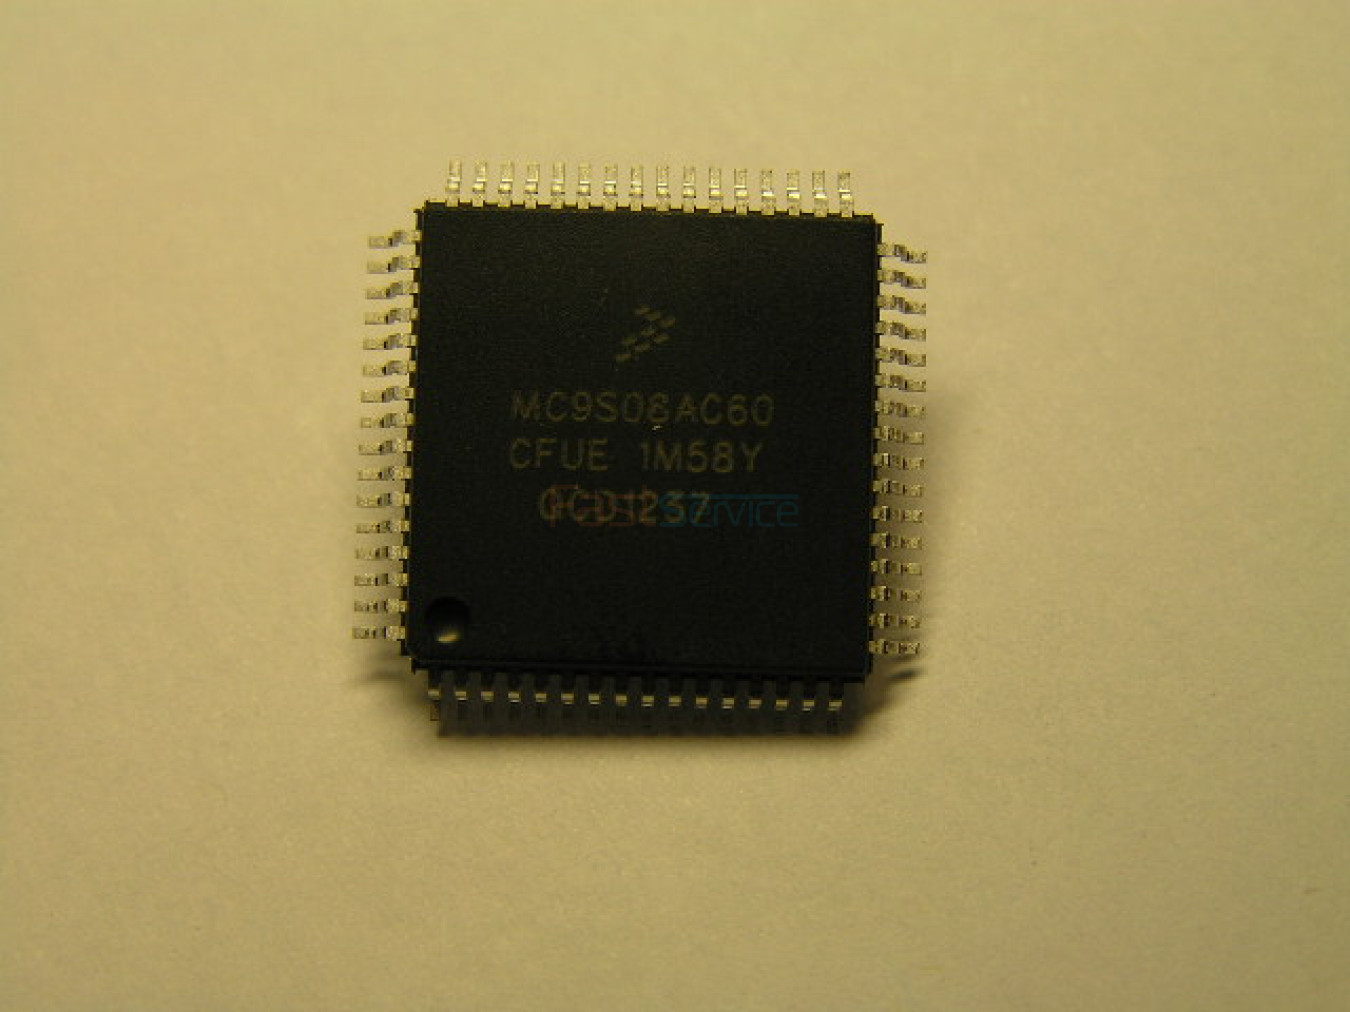 Процессор MC9S08AC60 на СМА ZANUSSI ELECTROLUX (EWM1100, EWM2100 и др) чистый